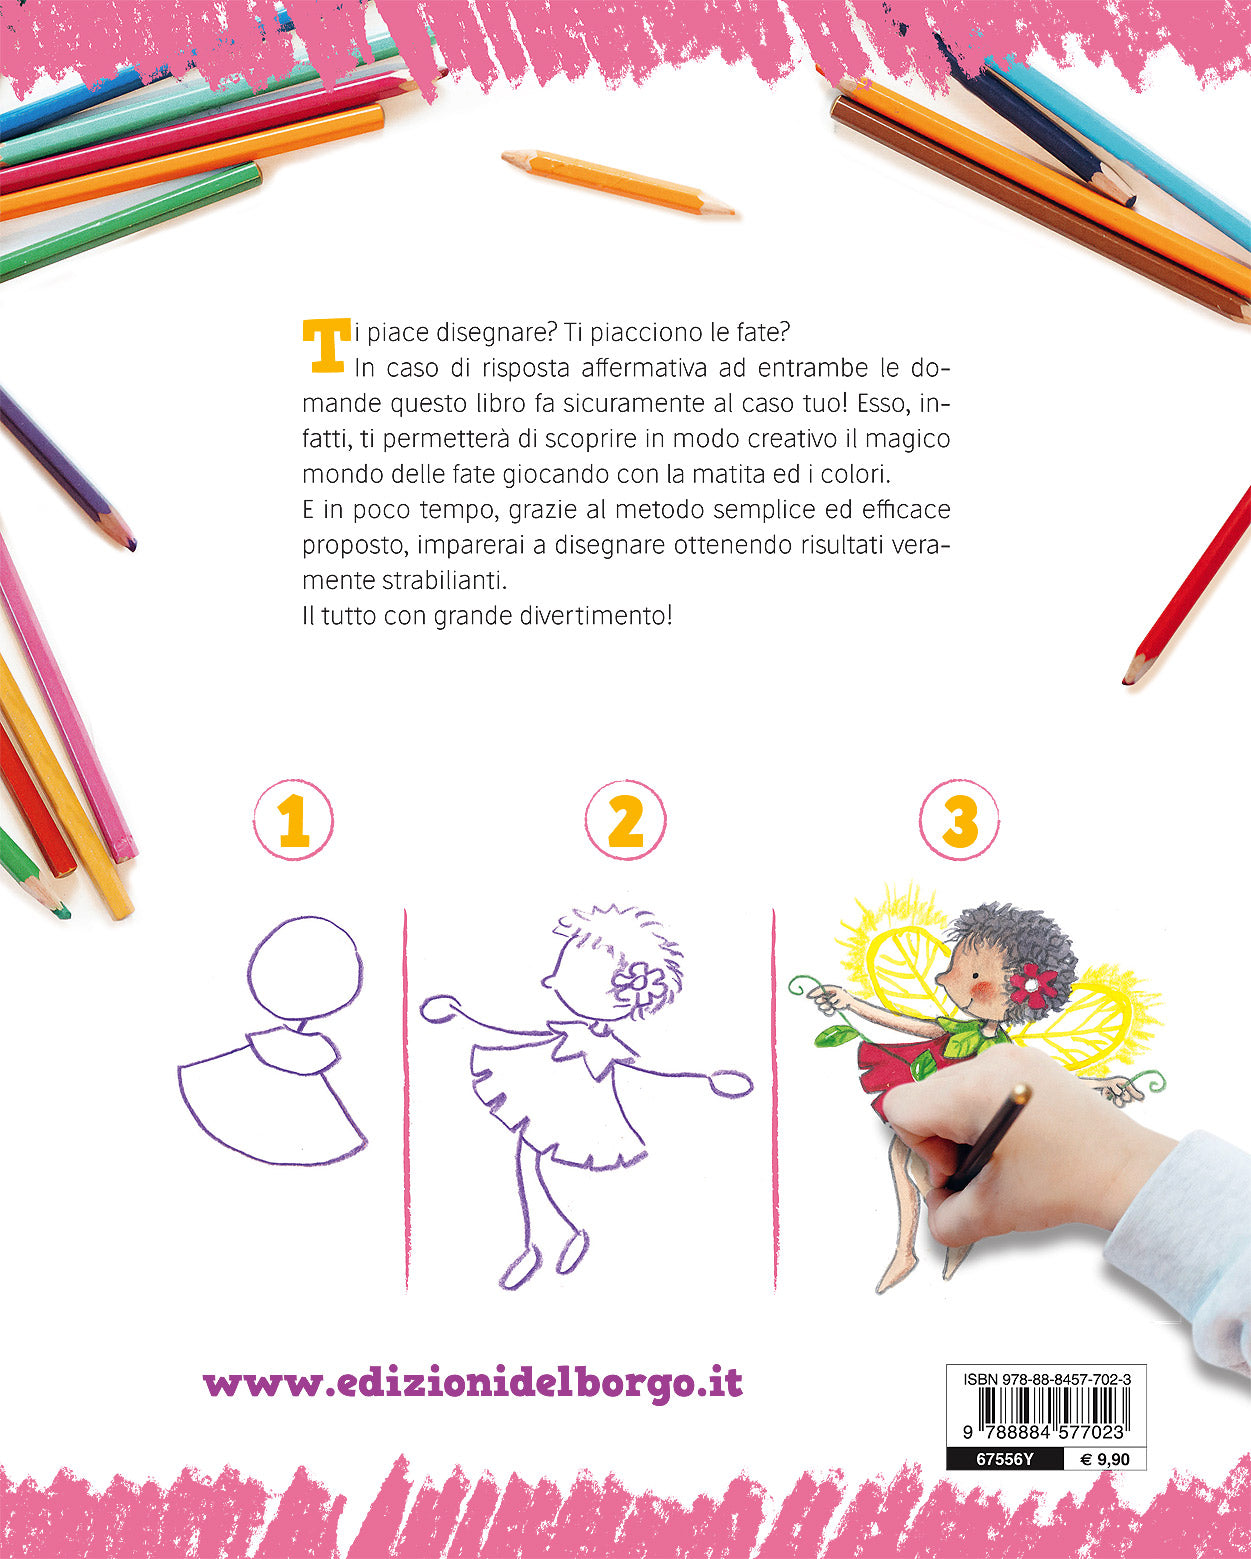 Imparare a disegnare. Corso per bambini - Vol. 4::Il mondo delle fate - Un manuale con tanti esempi per imparare a disegnare passo dopo passo